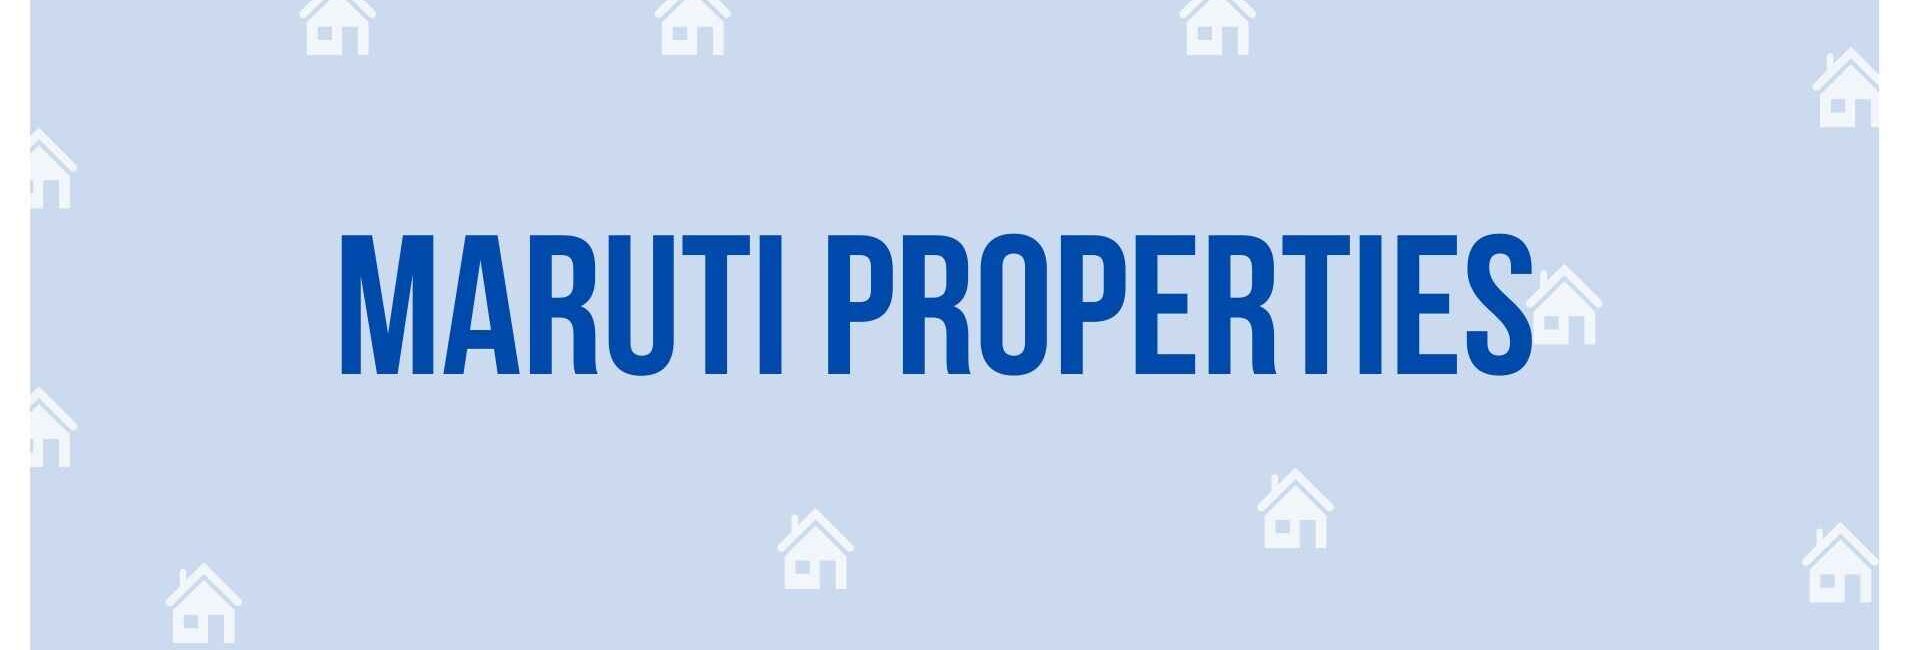 Maruti Properties - Property Dealer in Noida